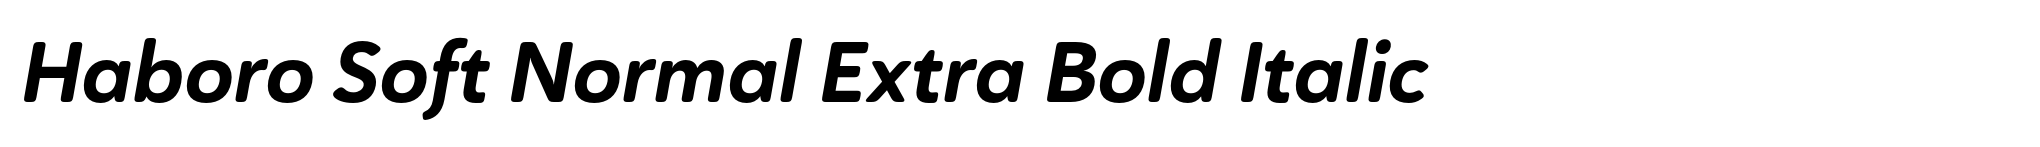 Haboro Soft Normal Extra Bold Italic image